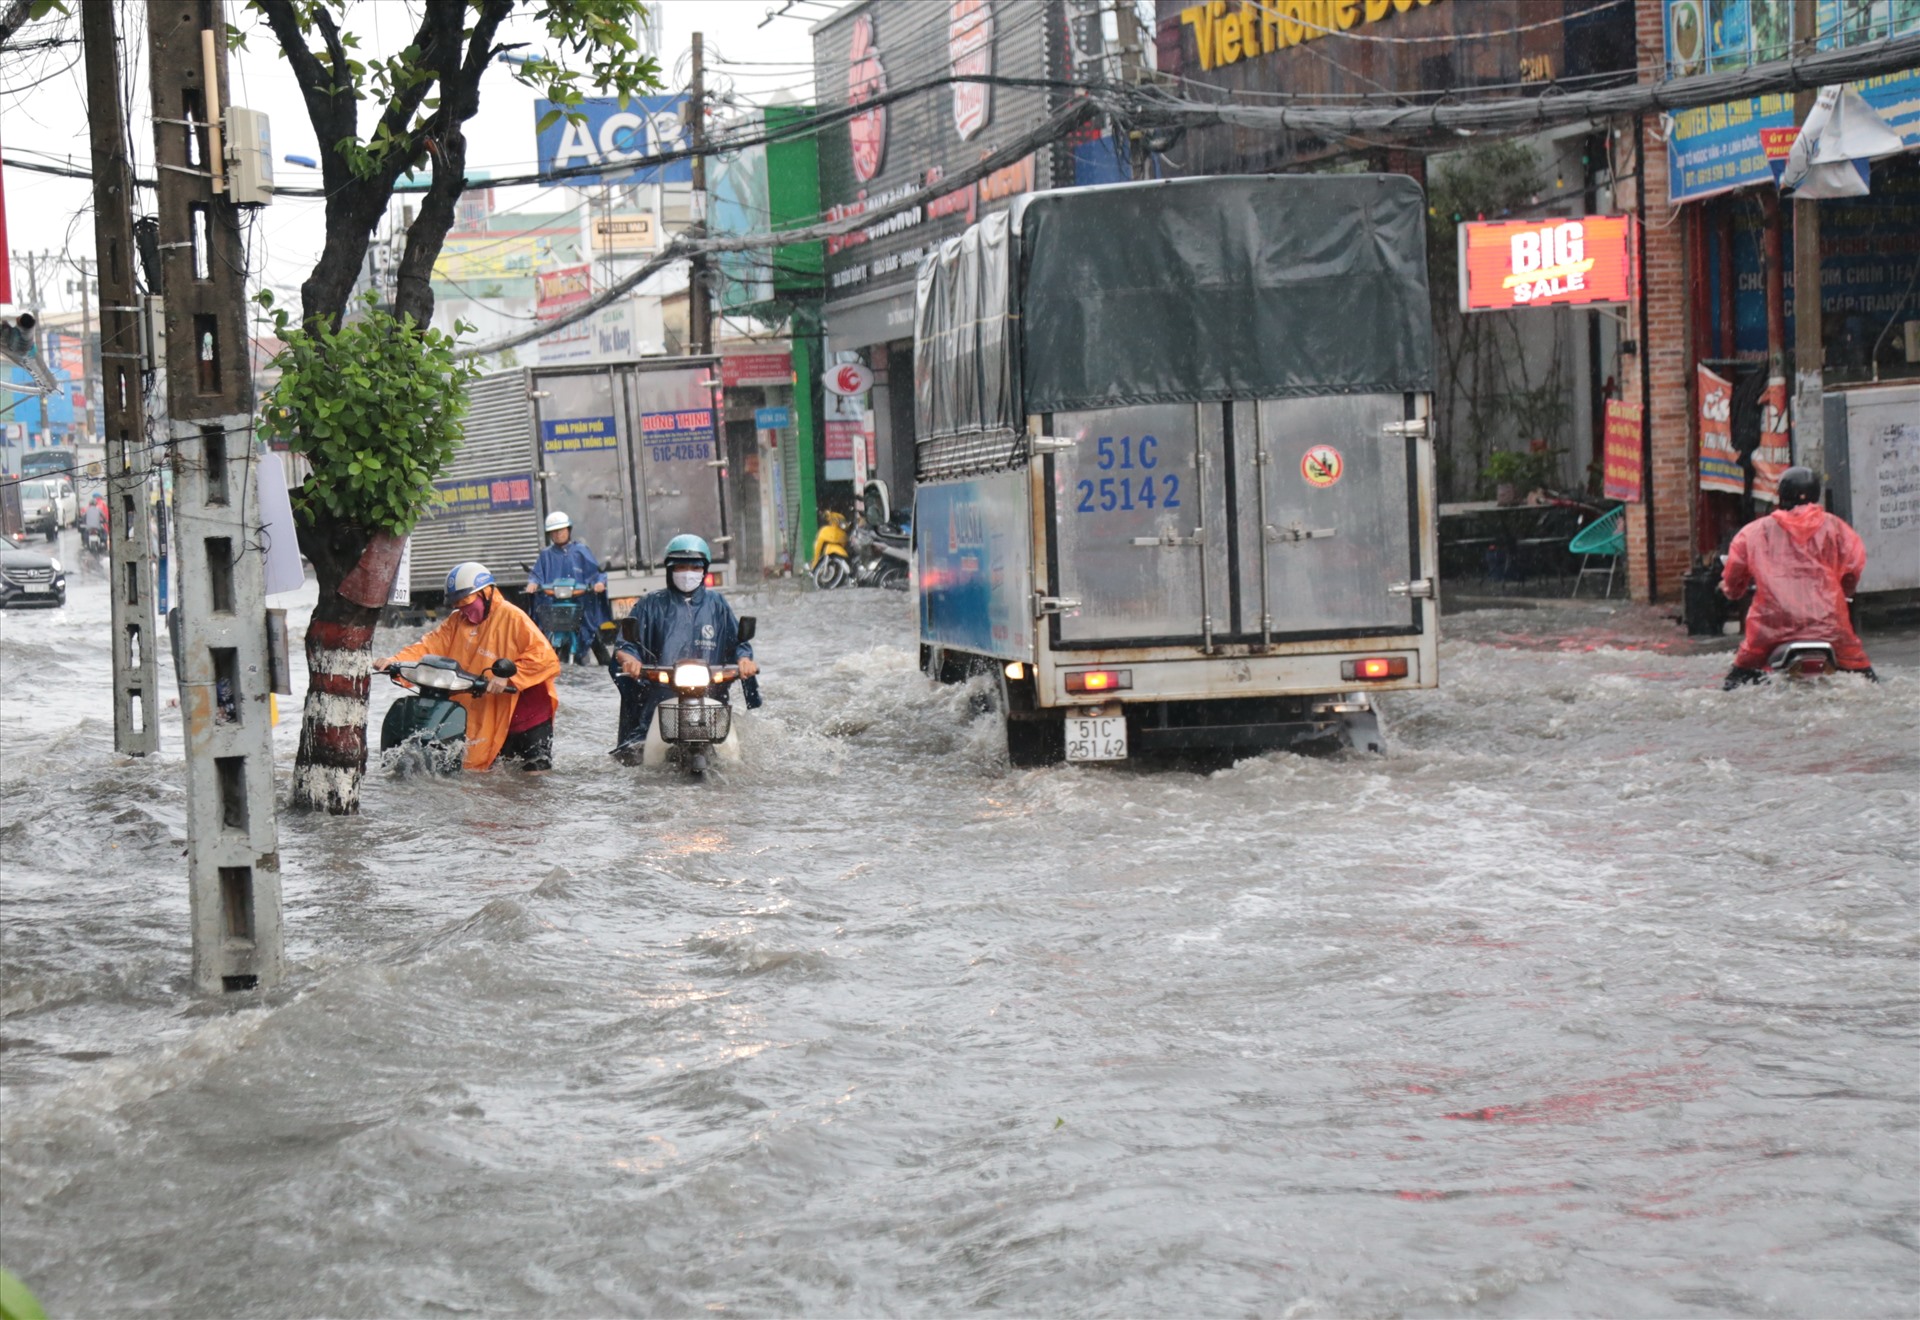 Chỉ sau 15 phút mưa lớn, đường Tô Ngọc Vân (phường Linh Đông, quận Thủ Đức) nước từ con suối tràn ra đường chảy xiết khiến giao thông bị tê liệt, ngập gần tới yên xe máy.